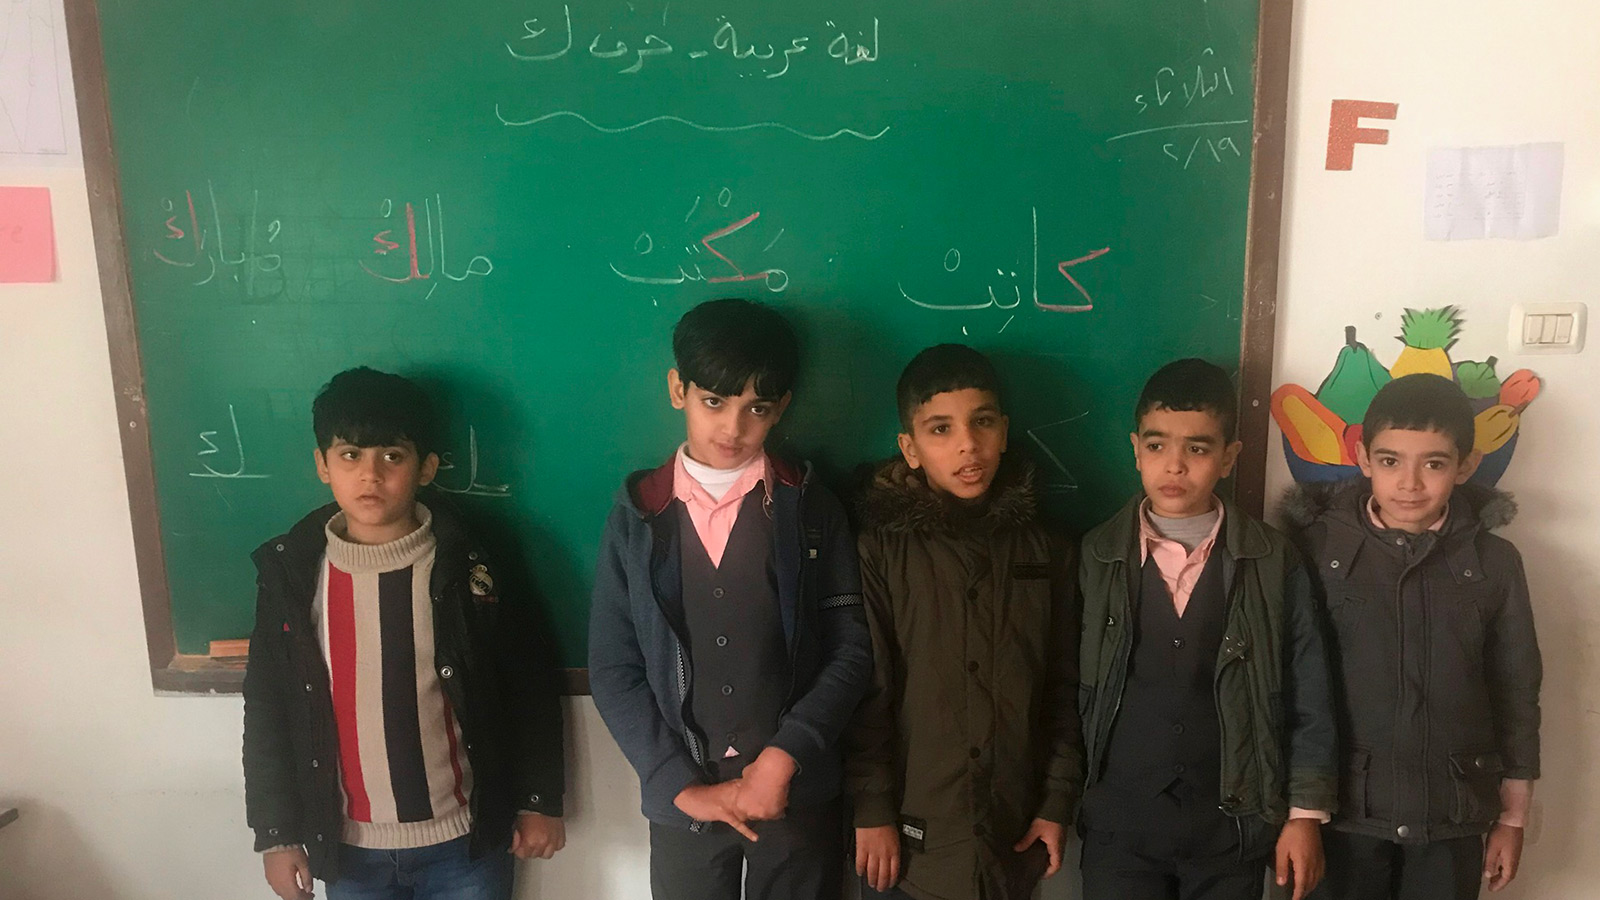 ‪أطفال مصابون بالتوحد اجتازوا امتحان وزارة التربية والتعليم للاندماج في مدرسة عامة بغزة‬ (الجزيرة)